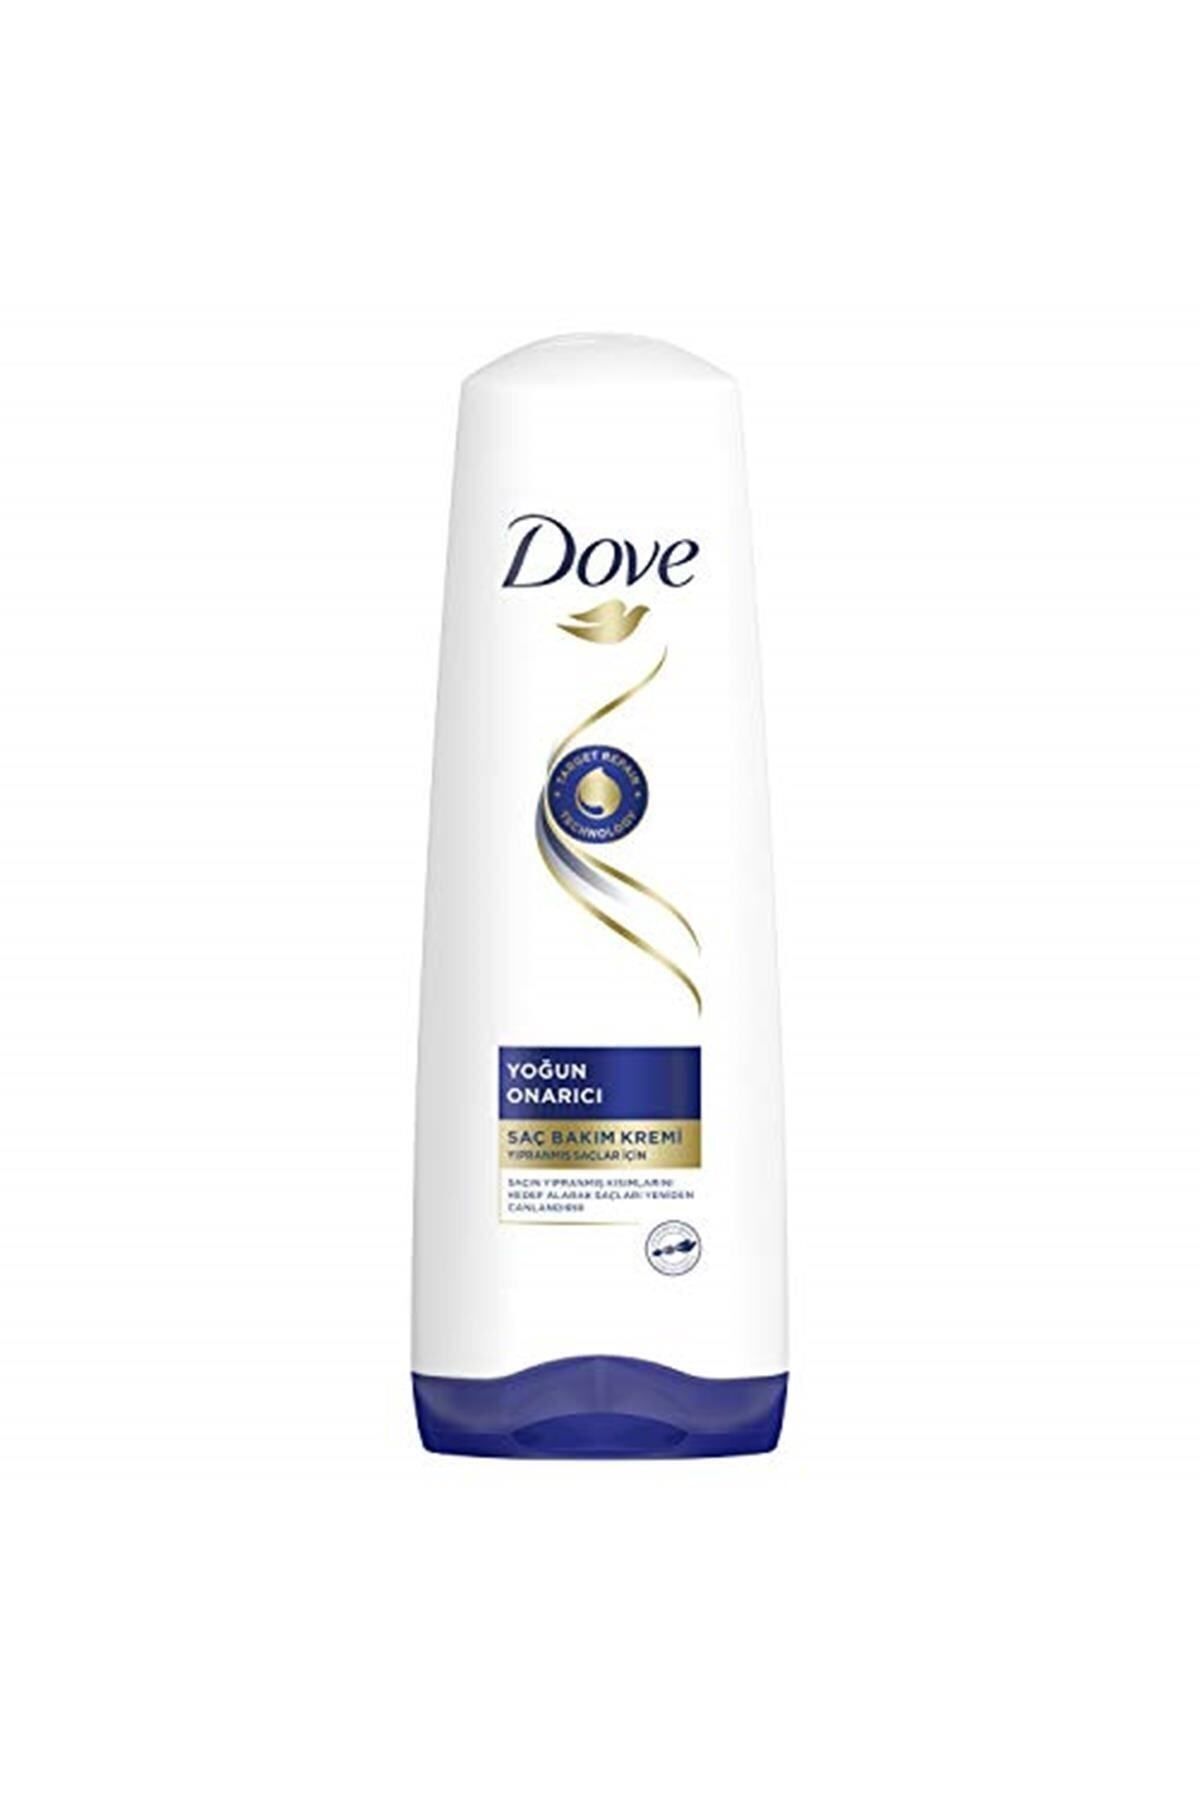 Dove Ultra Care Saç Bakım Kremi Yoğun Onarıcı Yıpranmış Saçlar Için 350 ml